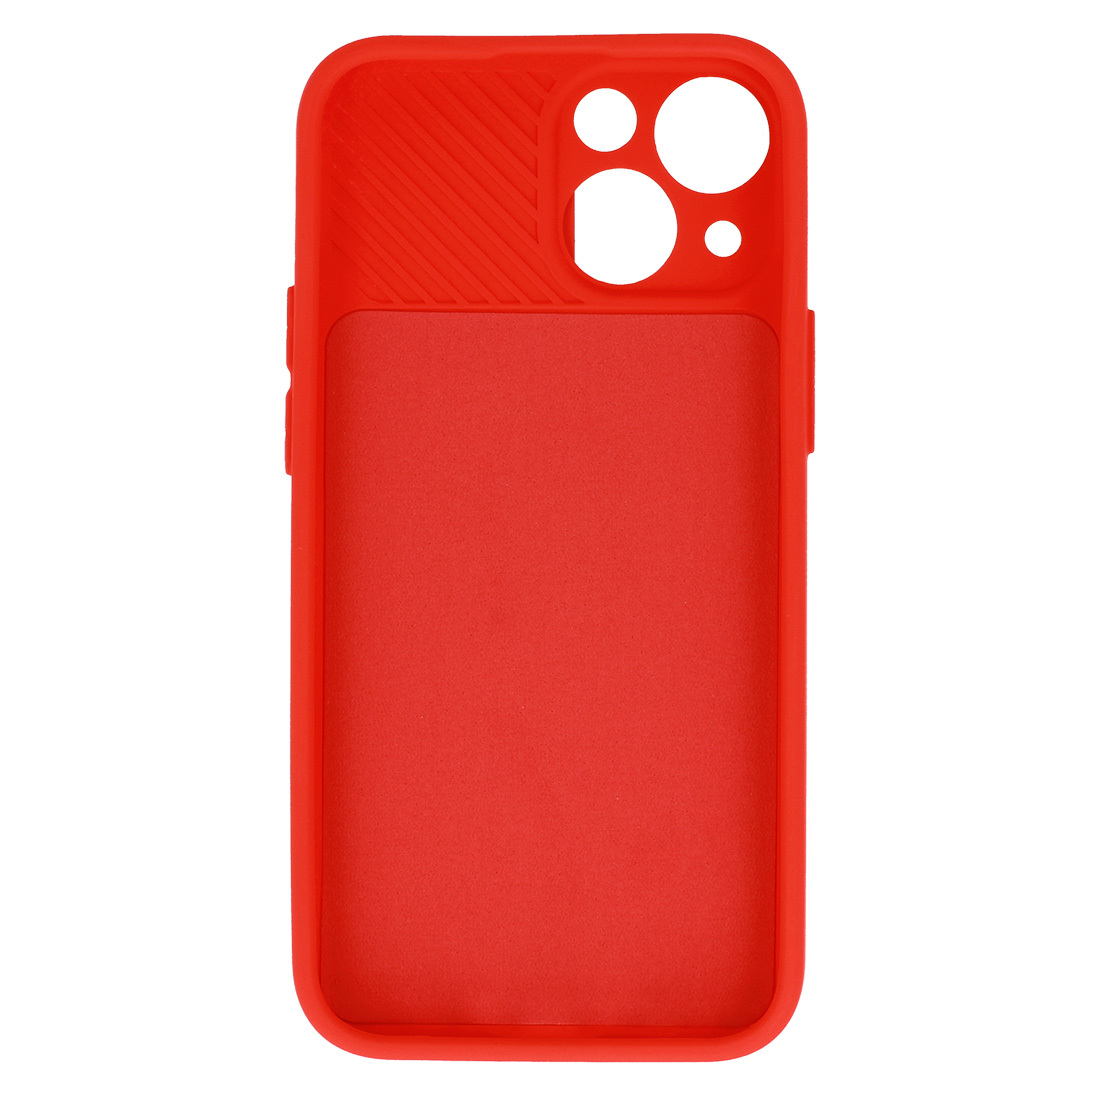 Pokrowiec etui z elastycznego TPU Camshield Soft Case czerwone APPLE iPhone 11 Pro Max / 5